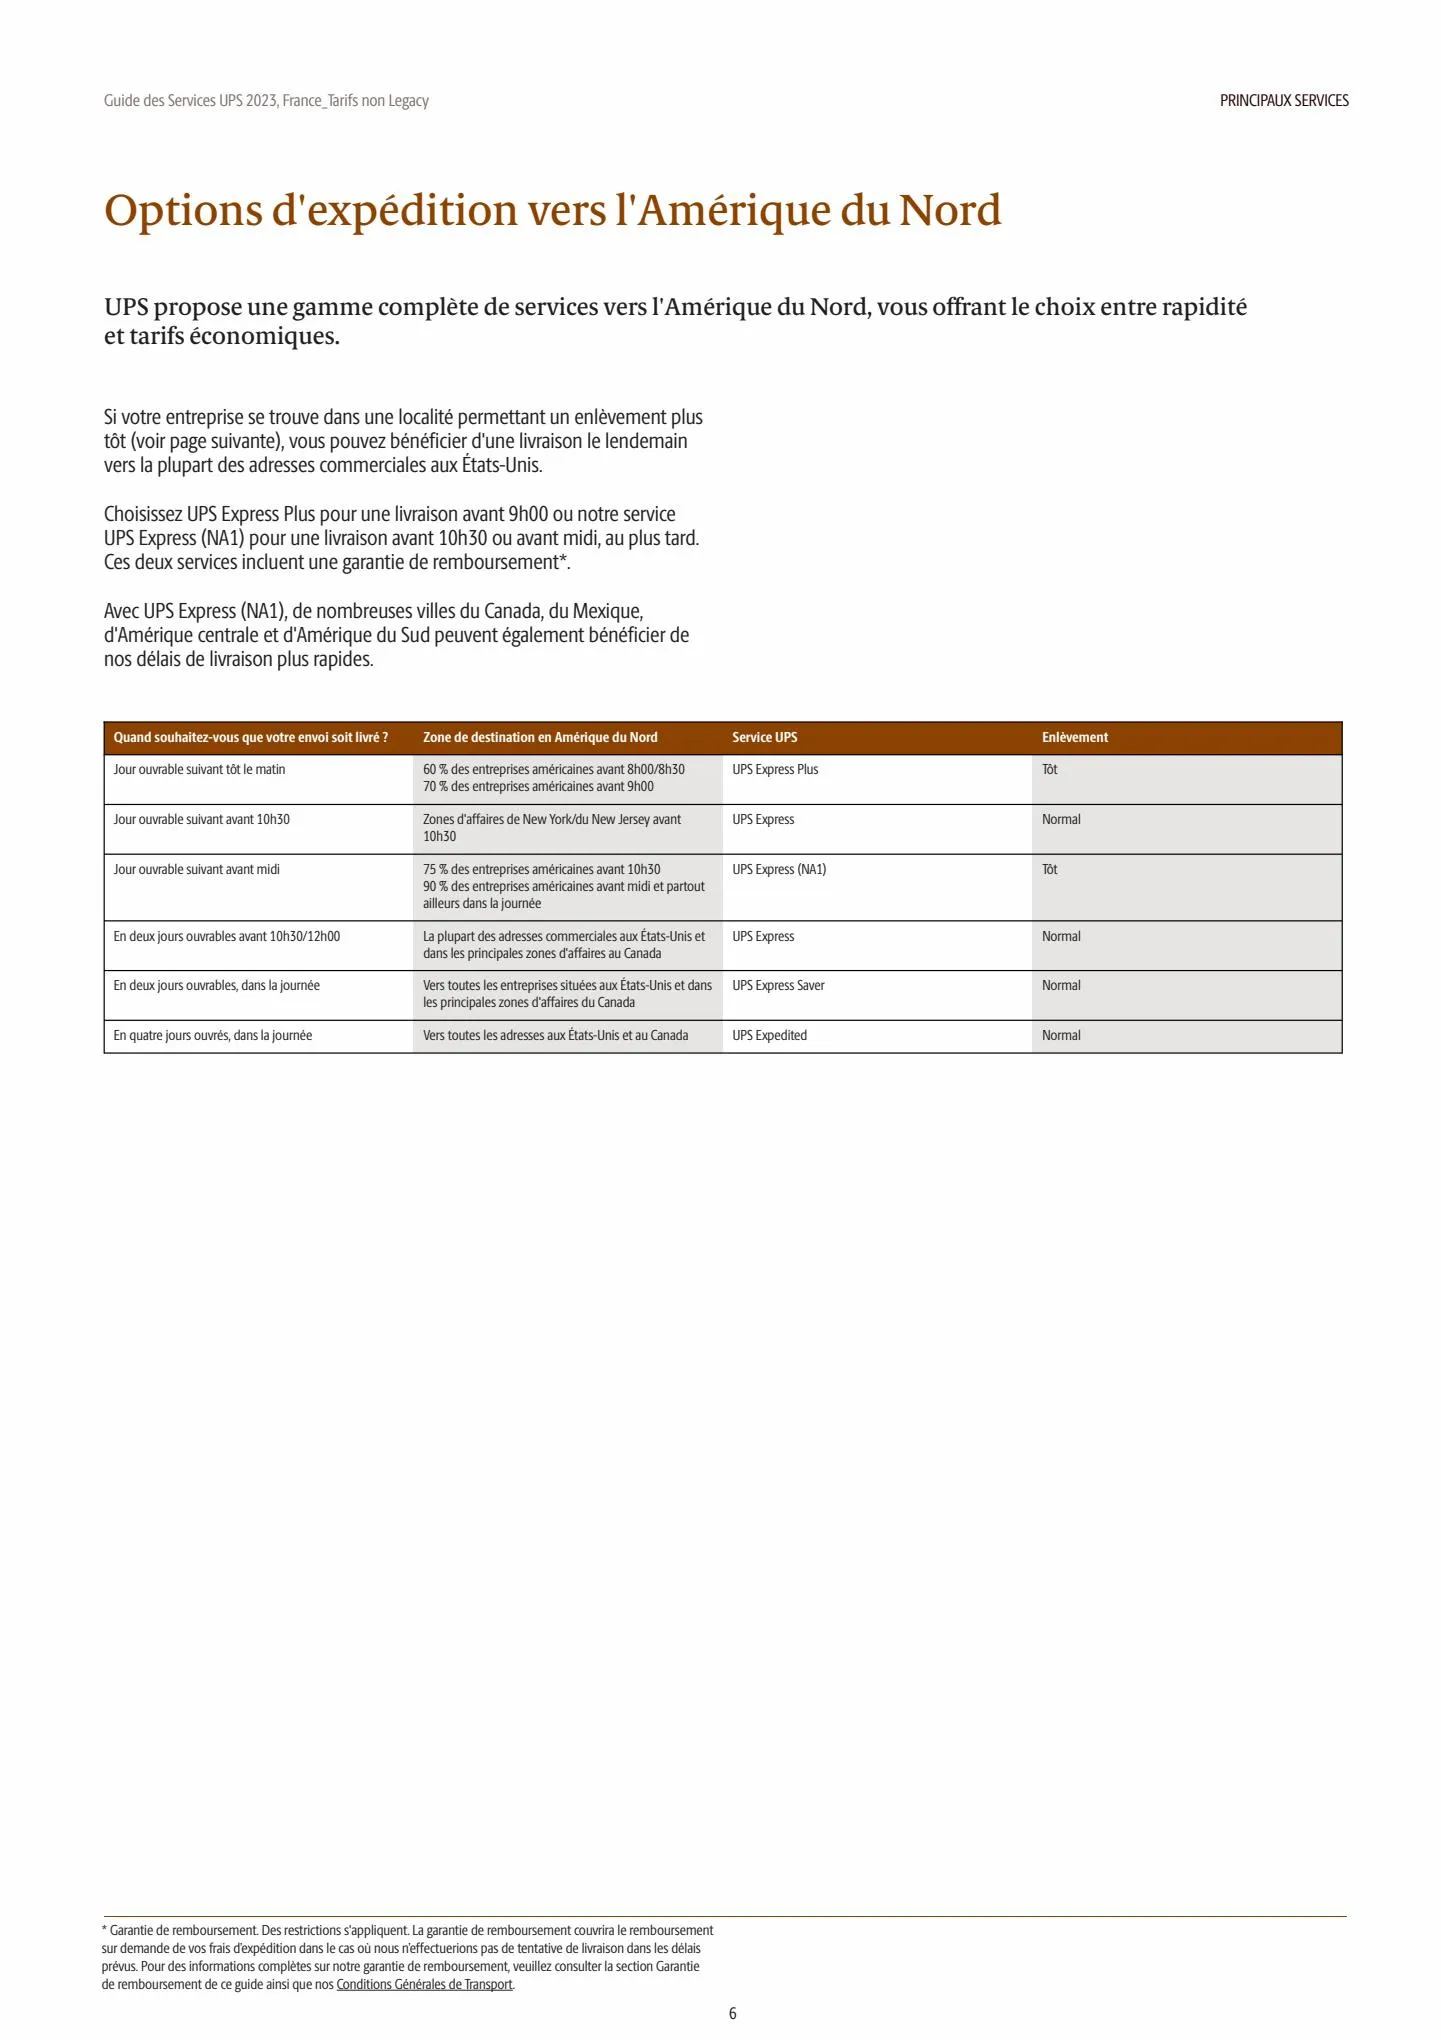 Catalogue Guide des Services 2023, page 00006